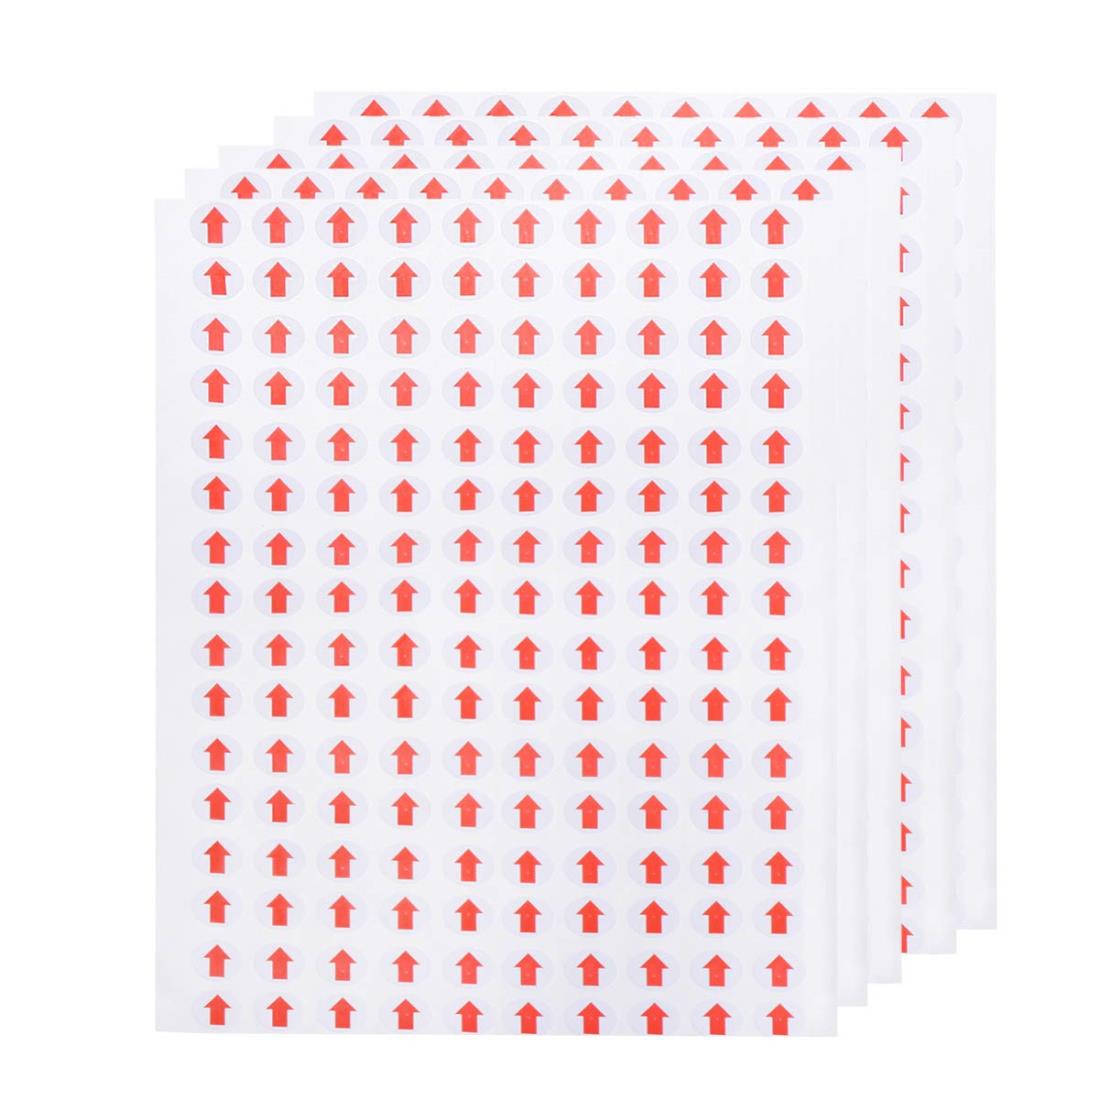 赤い矢印 検品 シール 欠陥指標 ステッカー 矢印 不良品 品質 ラベル 端数 検品済 検品メモ 丸い 20セット 3200枚 1 x 1cm